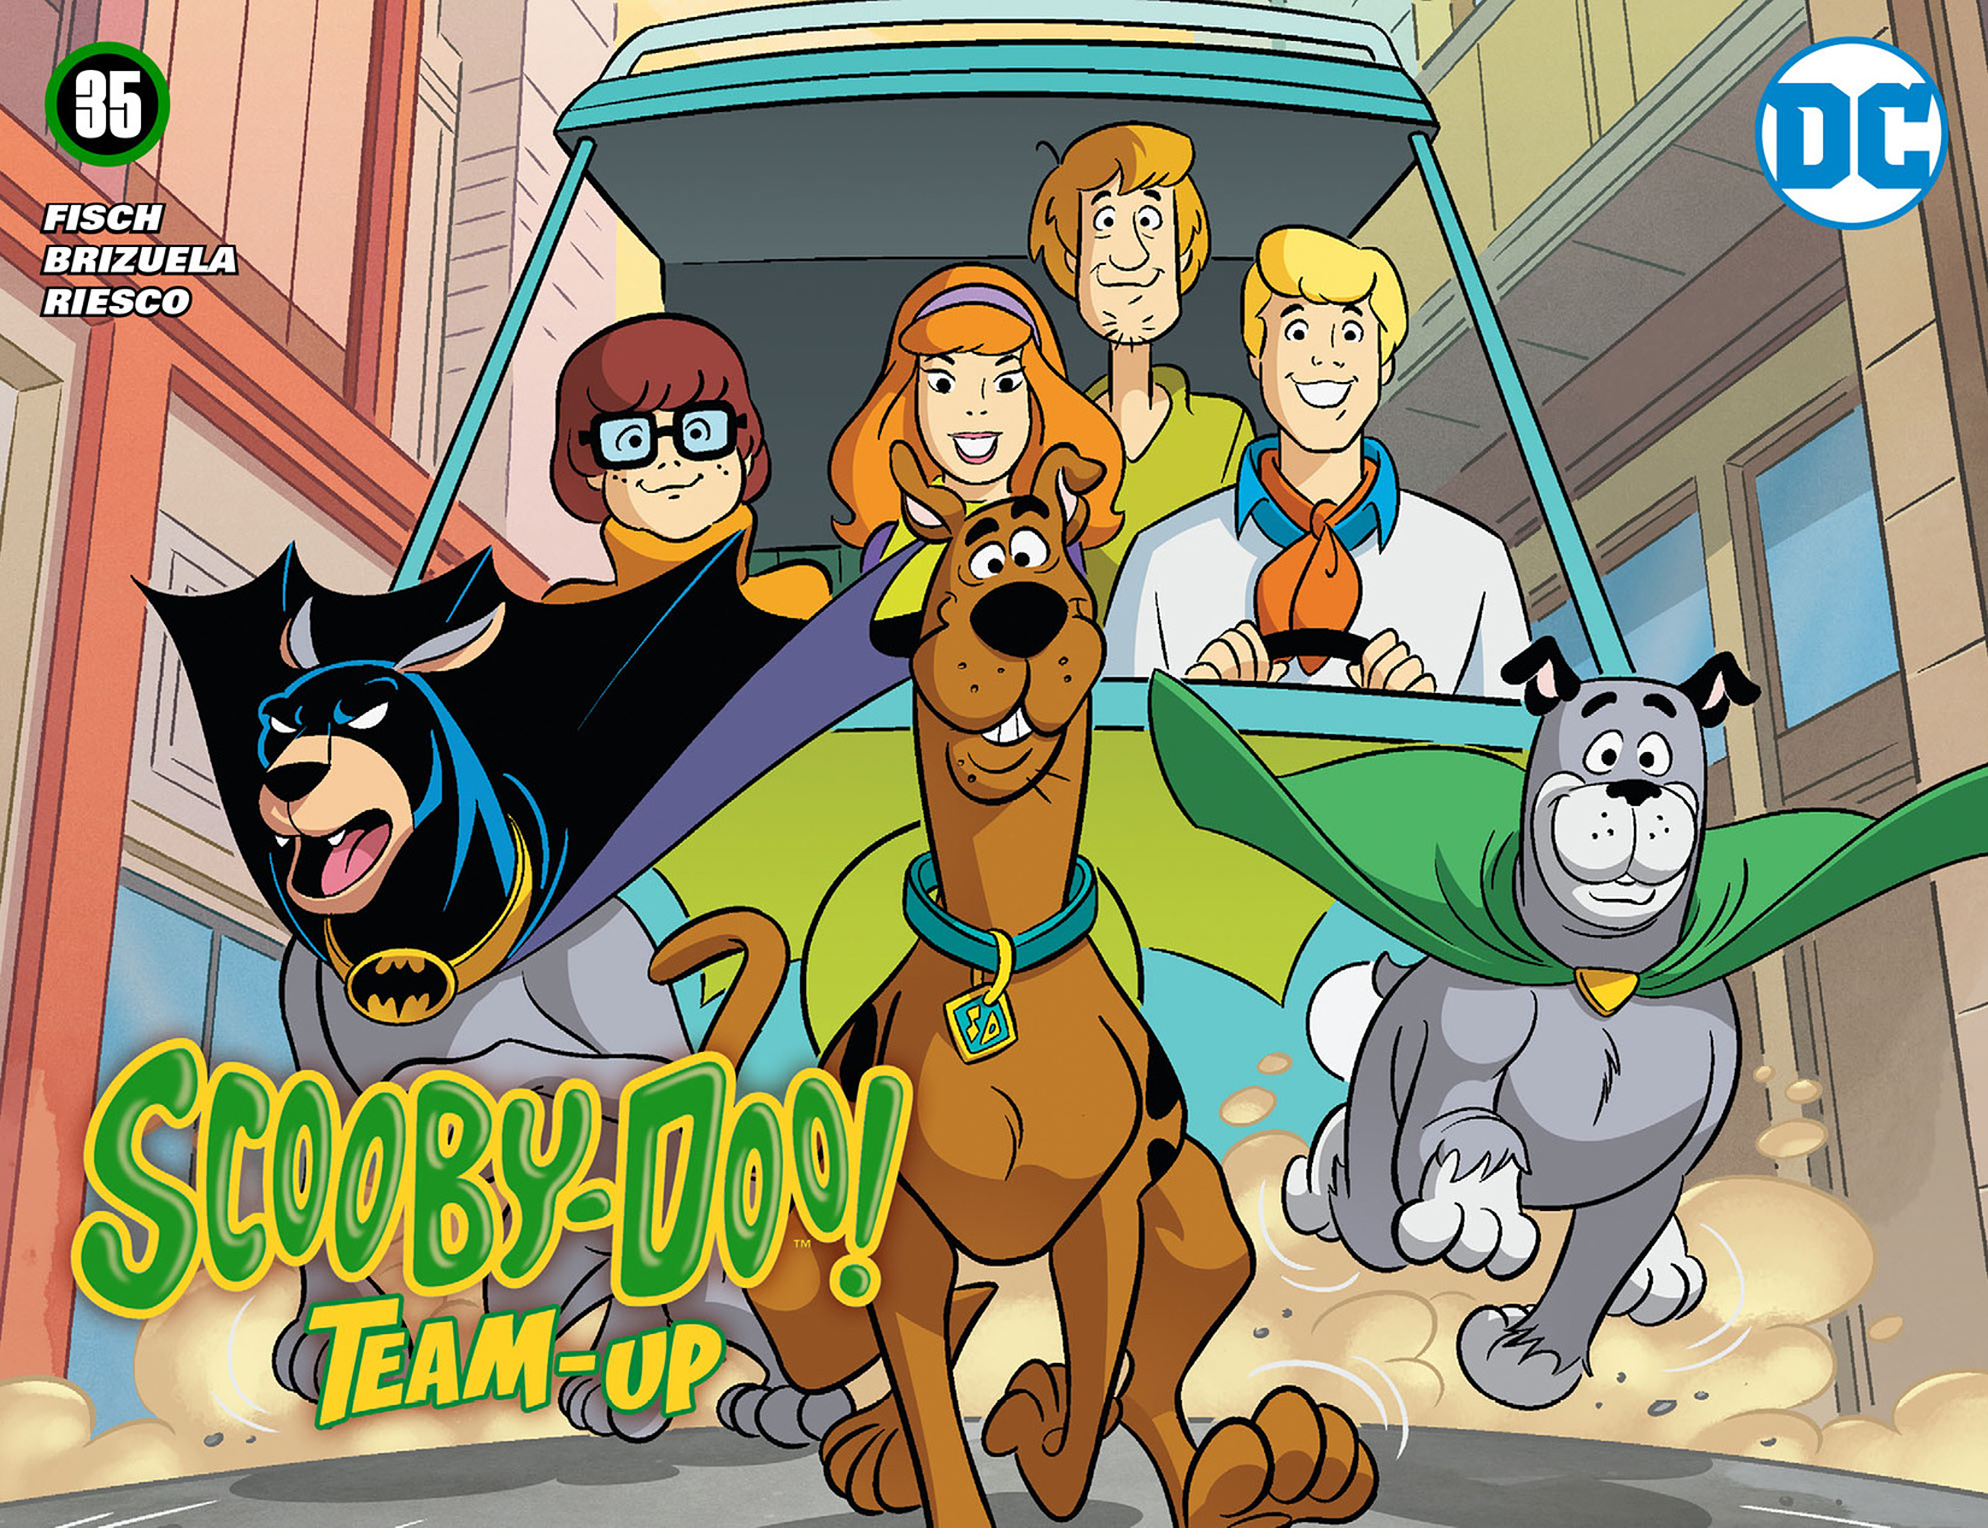 Scooby doo comics. Скуби-Ду и Бэтмен отважный и смелый. Команда Скуби Ду. Офицер Яффе Скуби Ду.